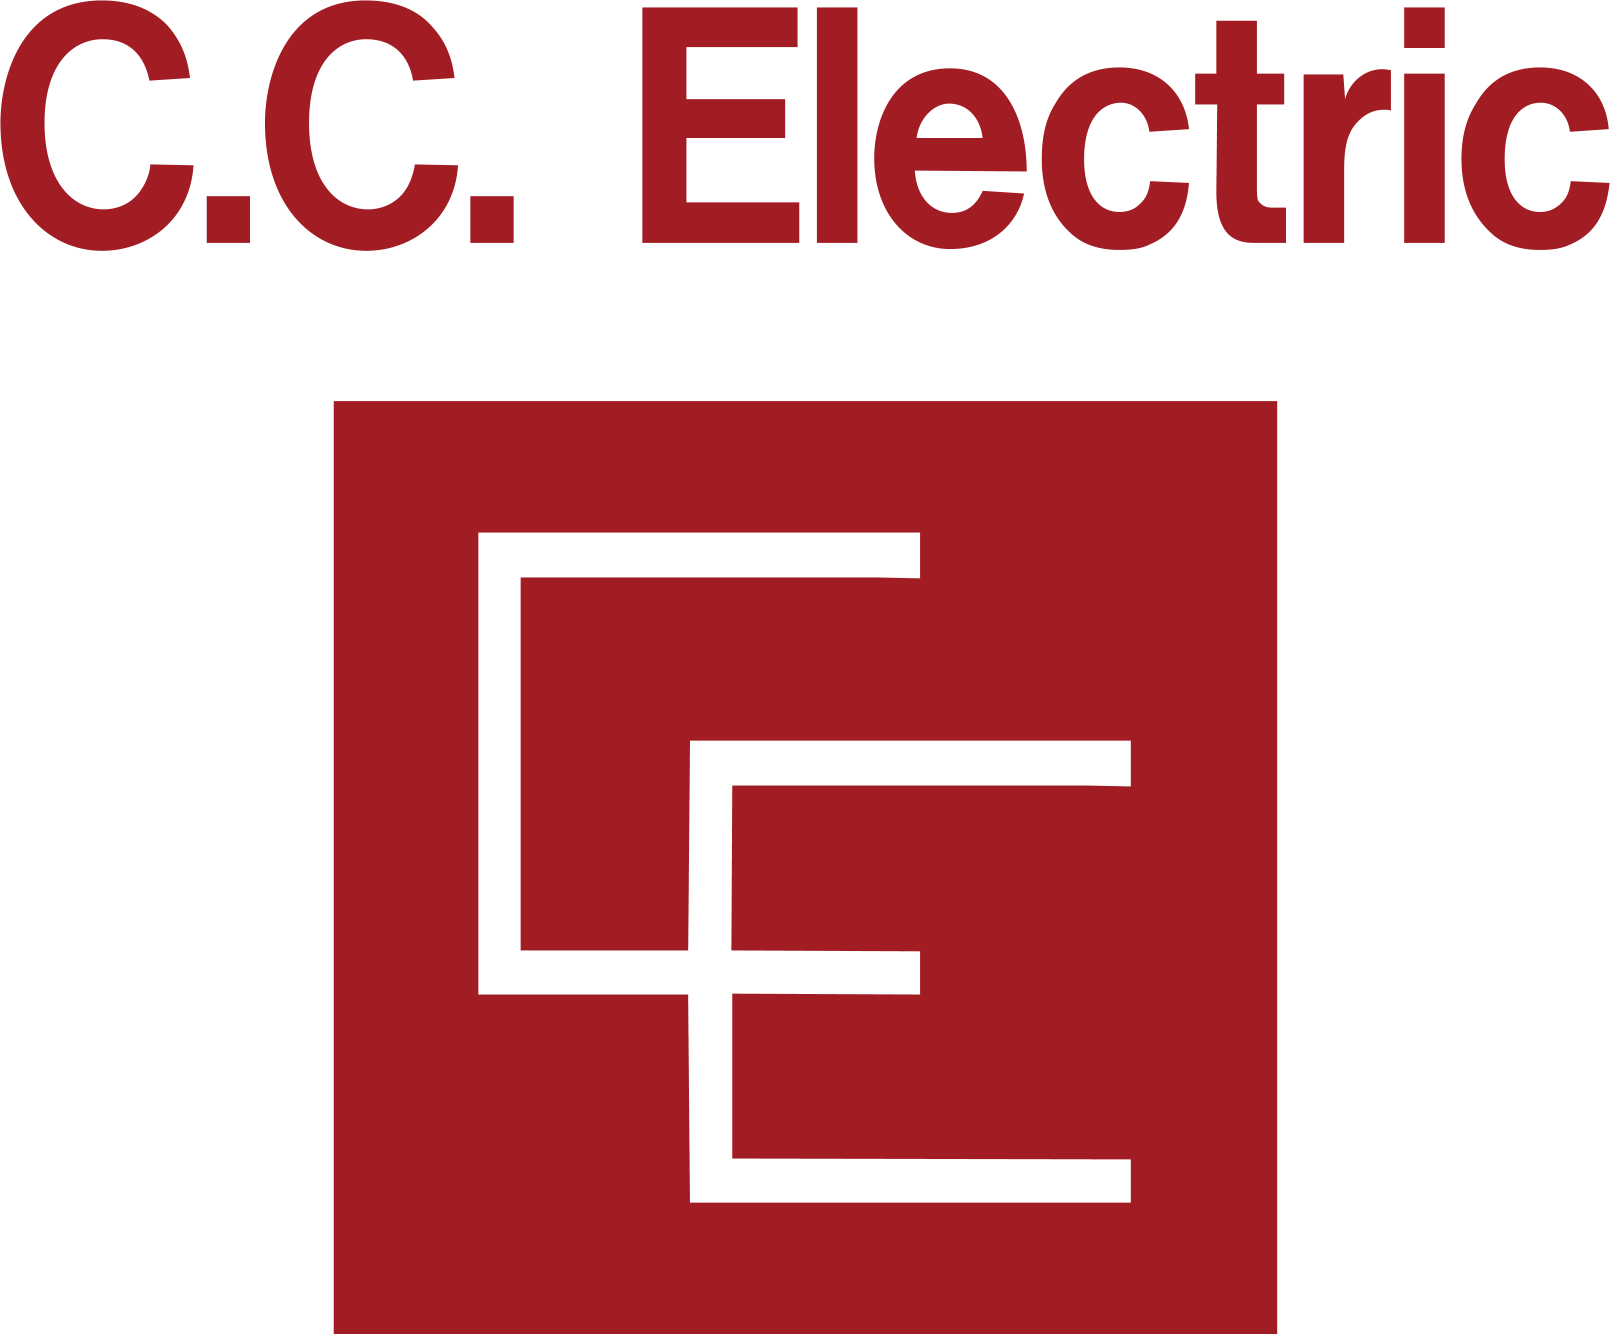 C.C. Electric